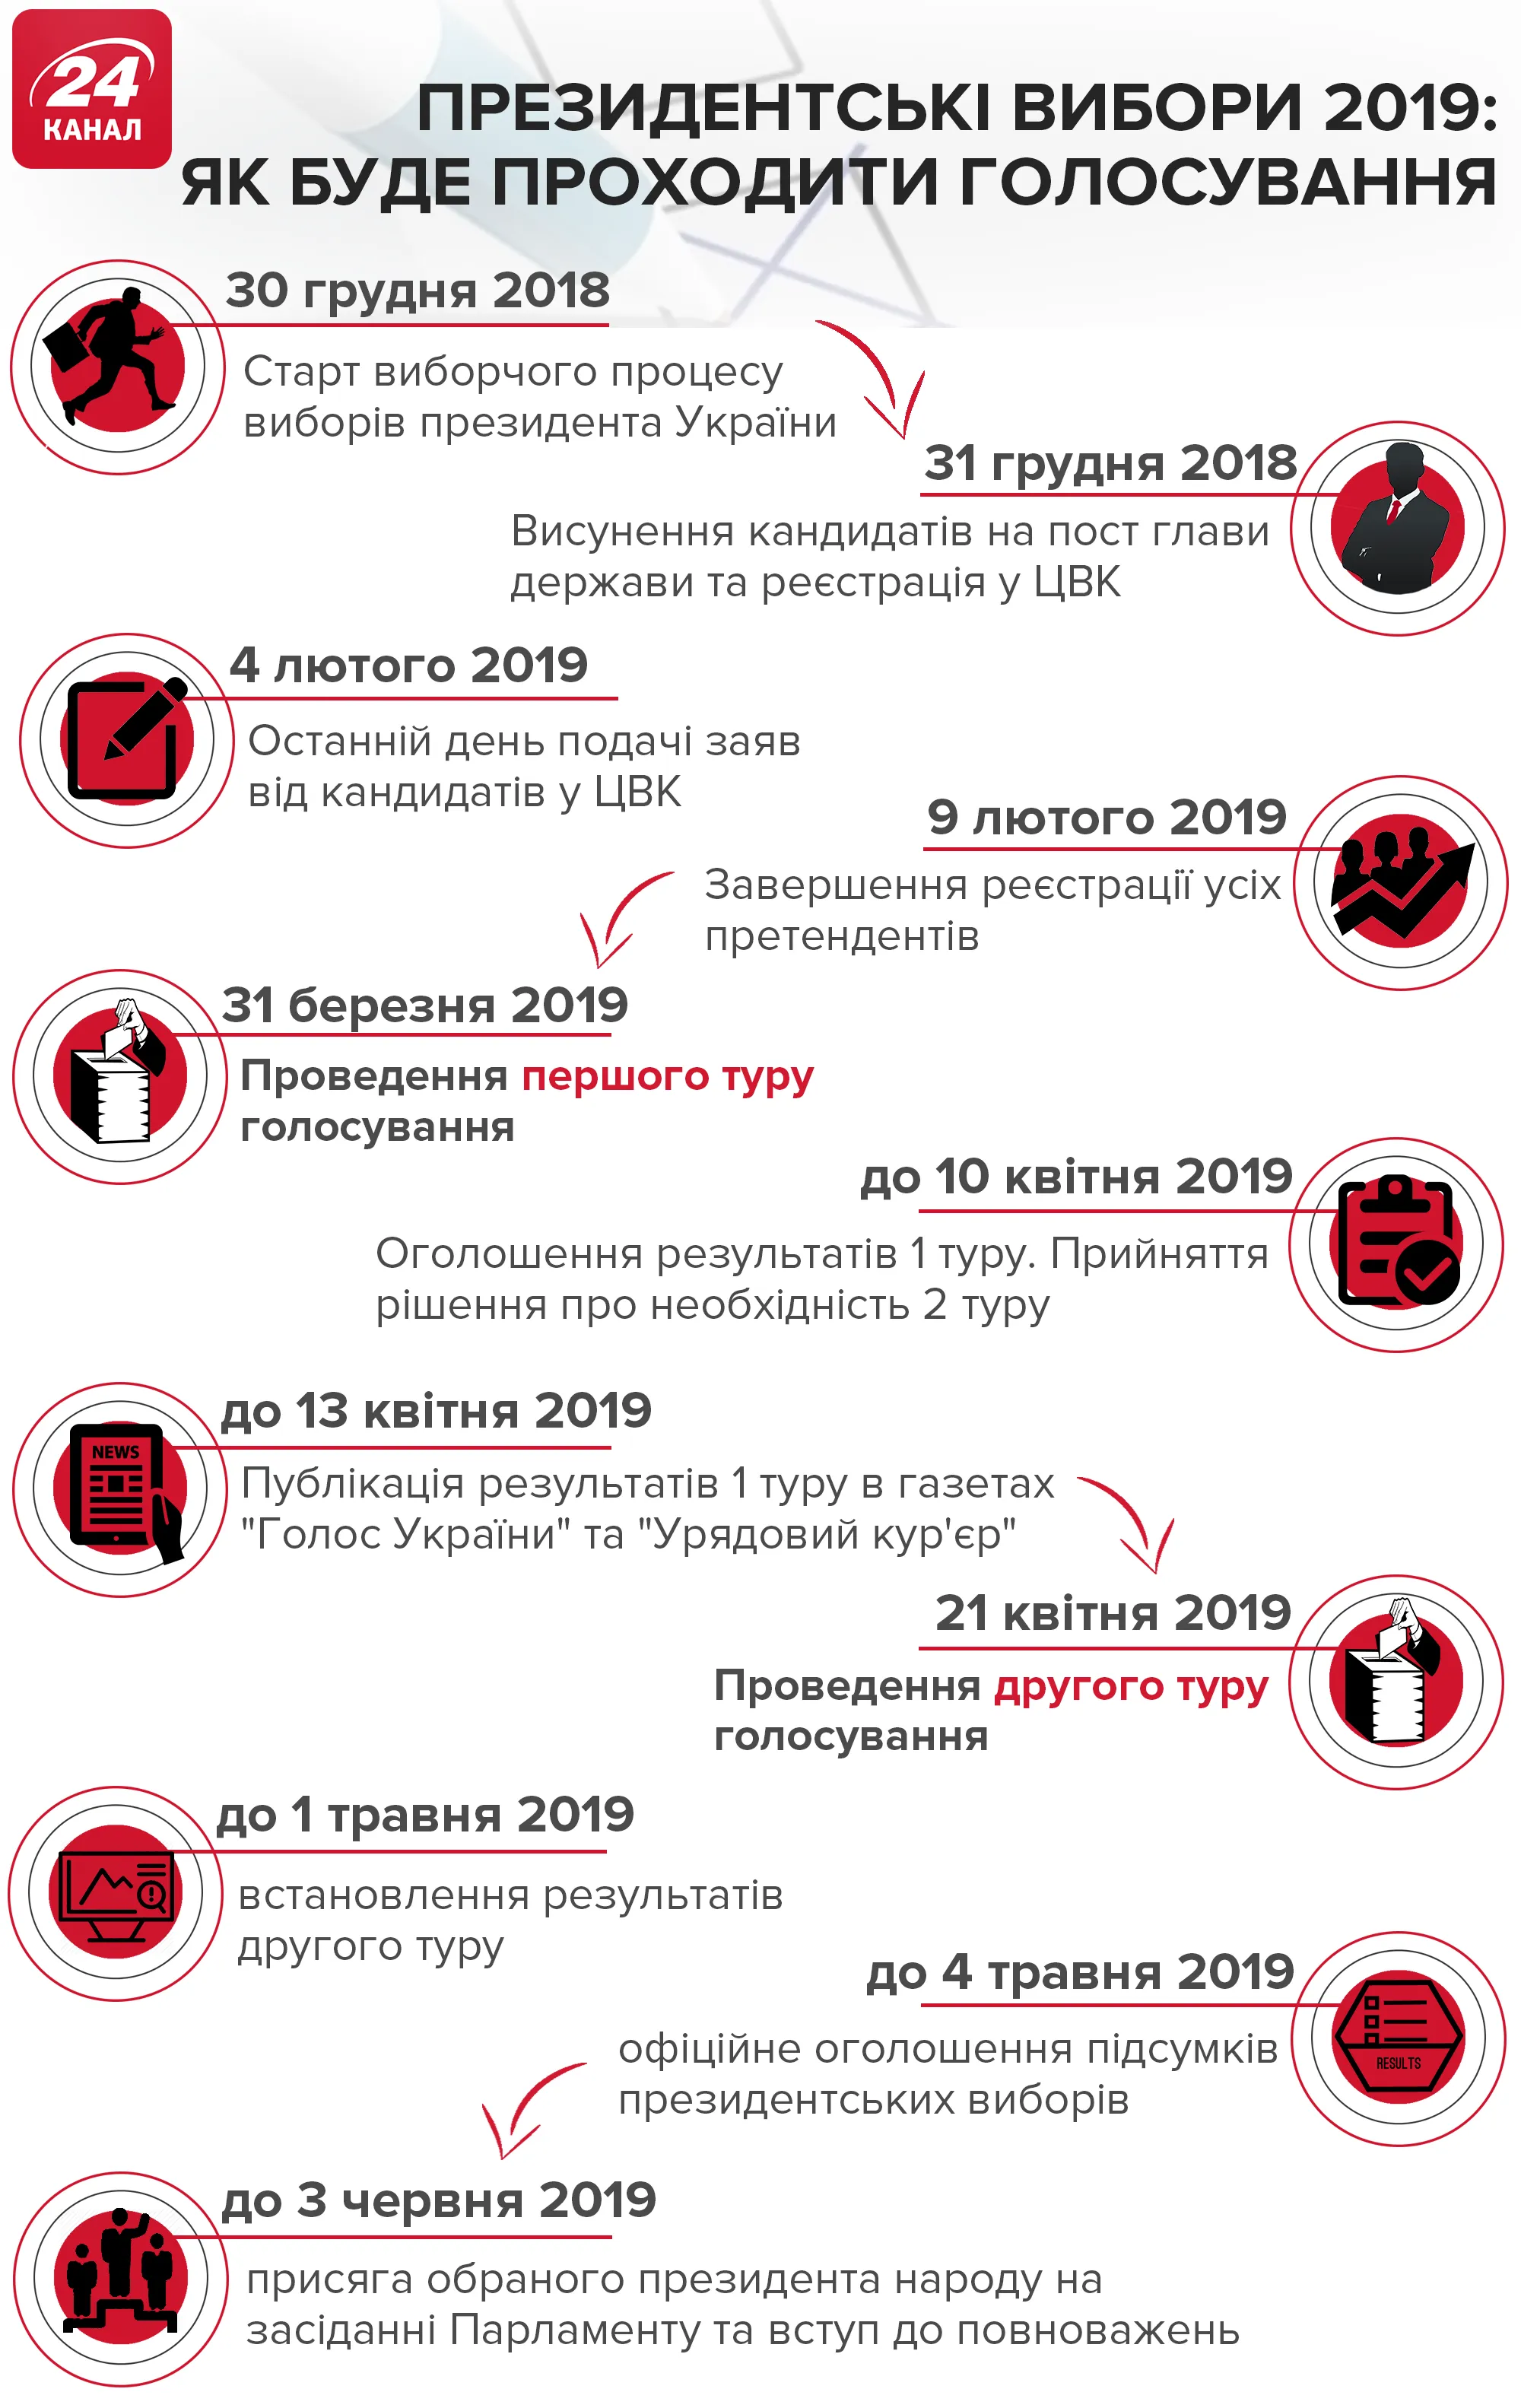 Головні дати виборчого процесу-2019 в Україні